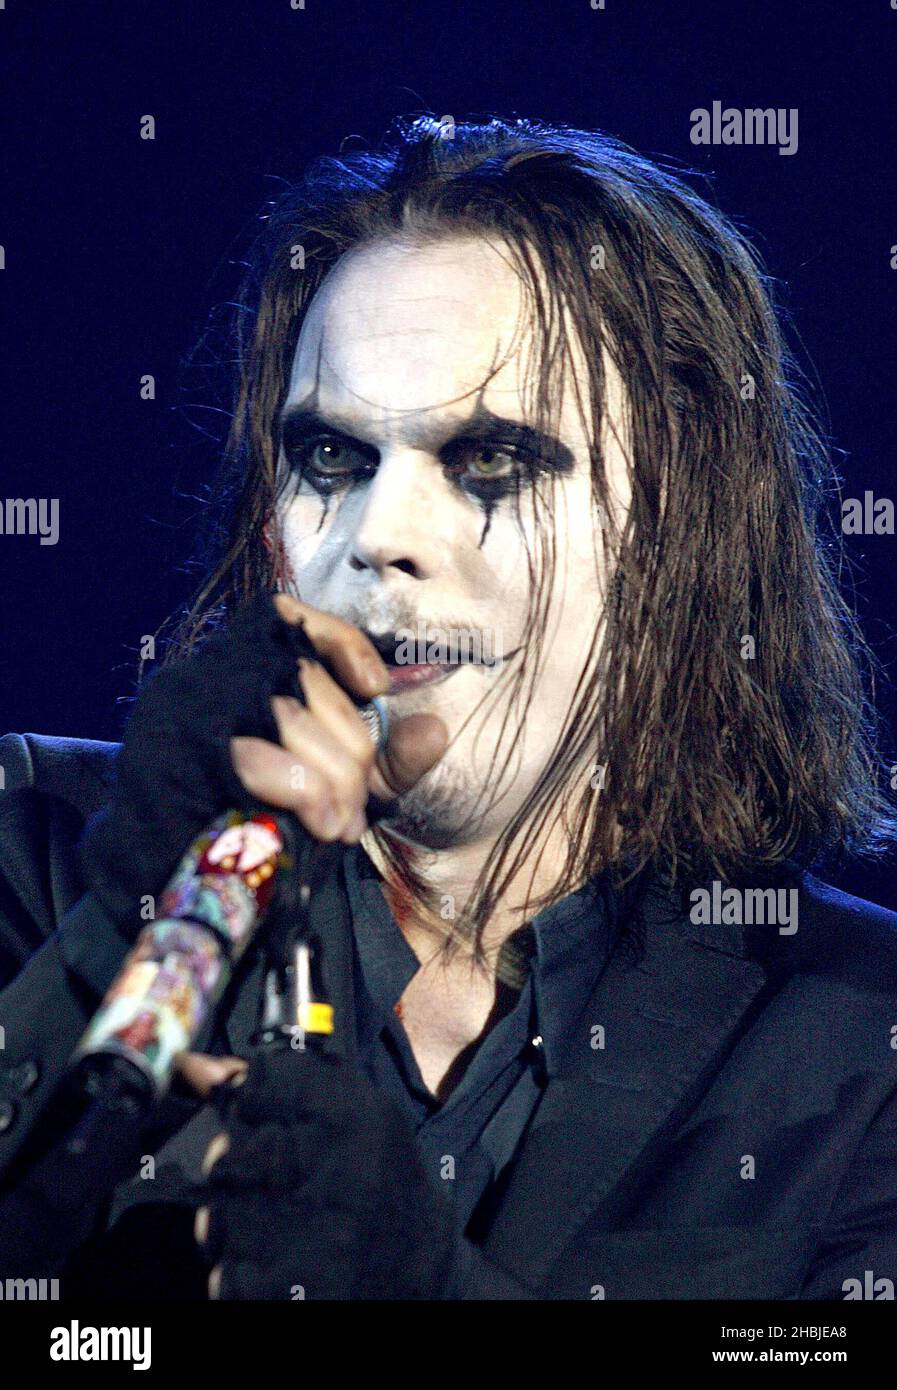 Ville Valo del grupo de rock finlandés HIM actúa en el escenario al final de su gira Halloween Especial show en el Carling Apollo, Hammersmith el 31 de octubre de 2004. Foto de stock